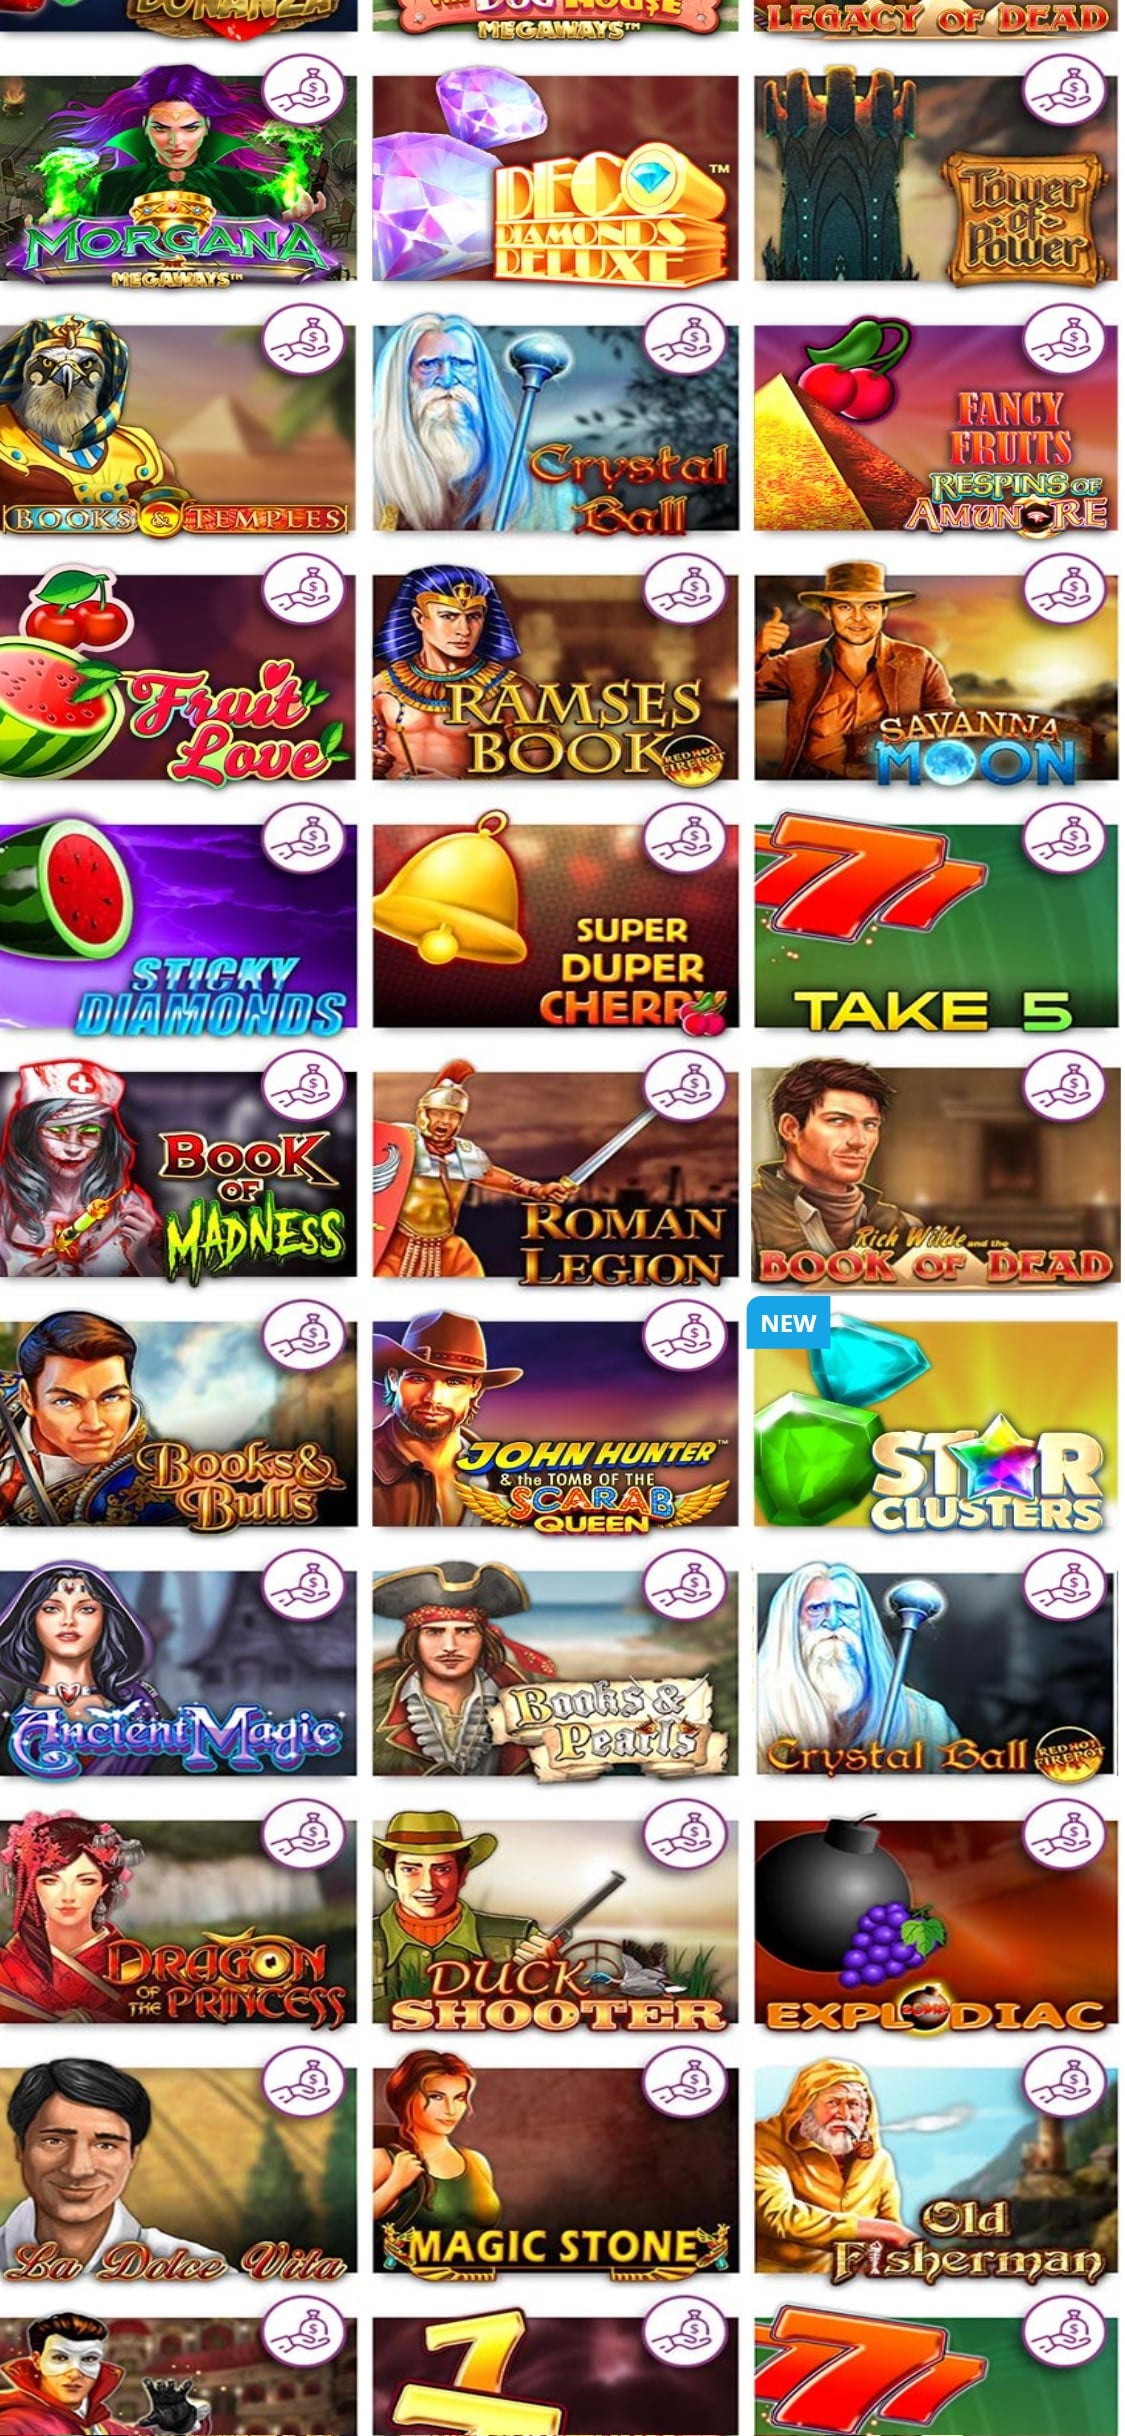 Casino Secret Mobile Games Review